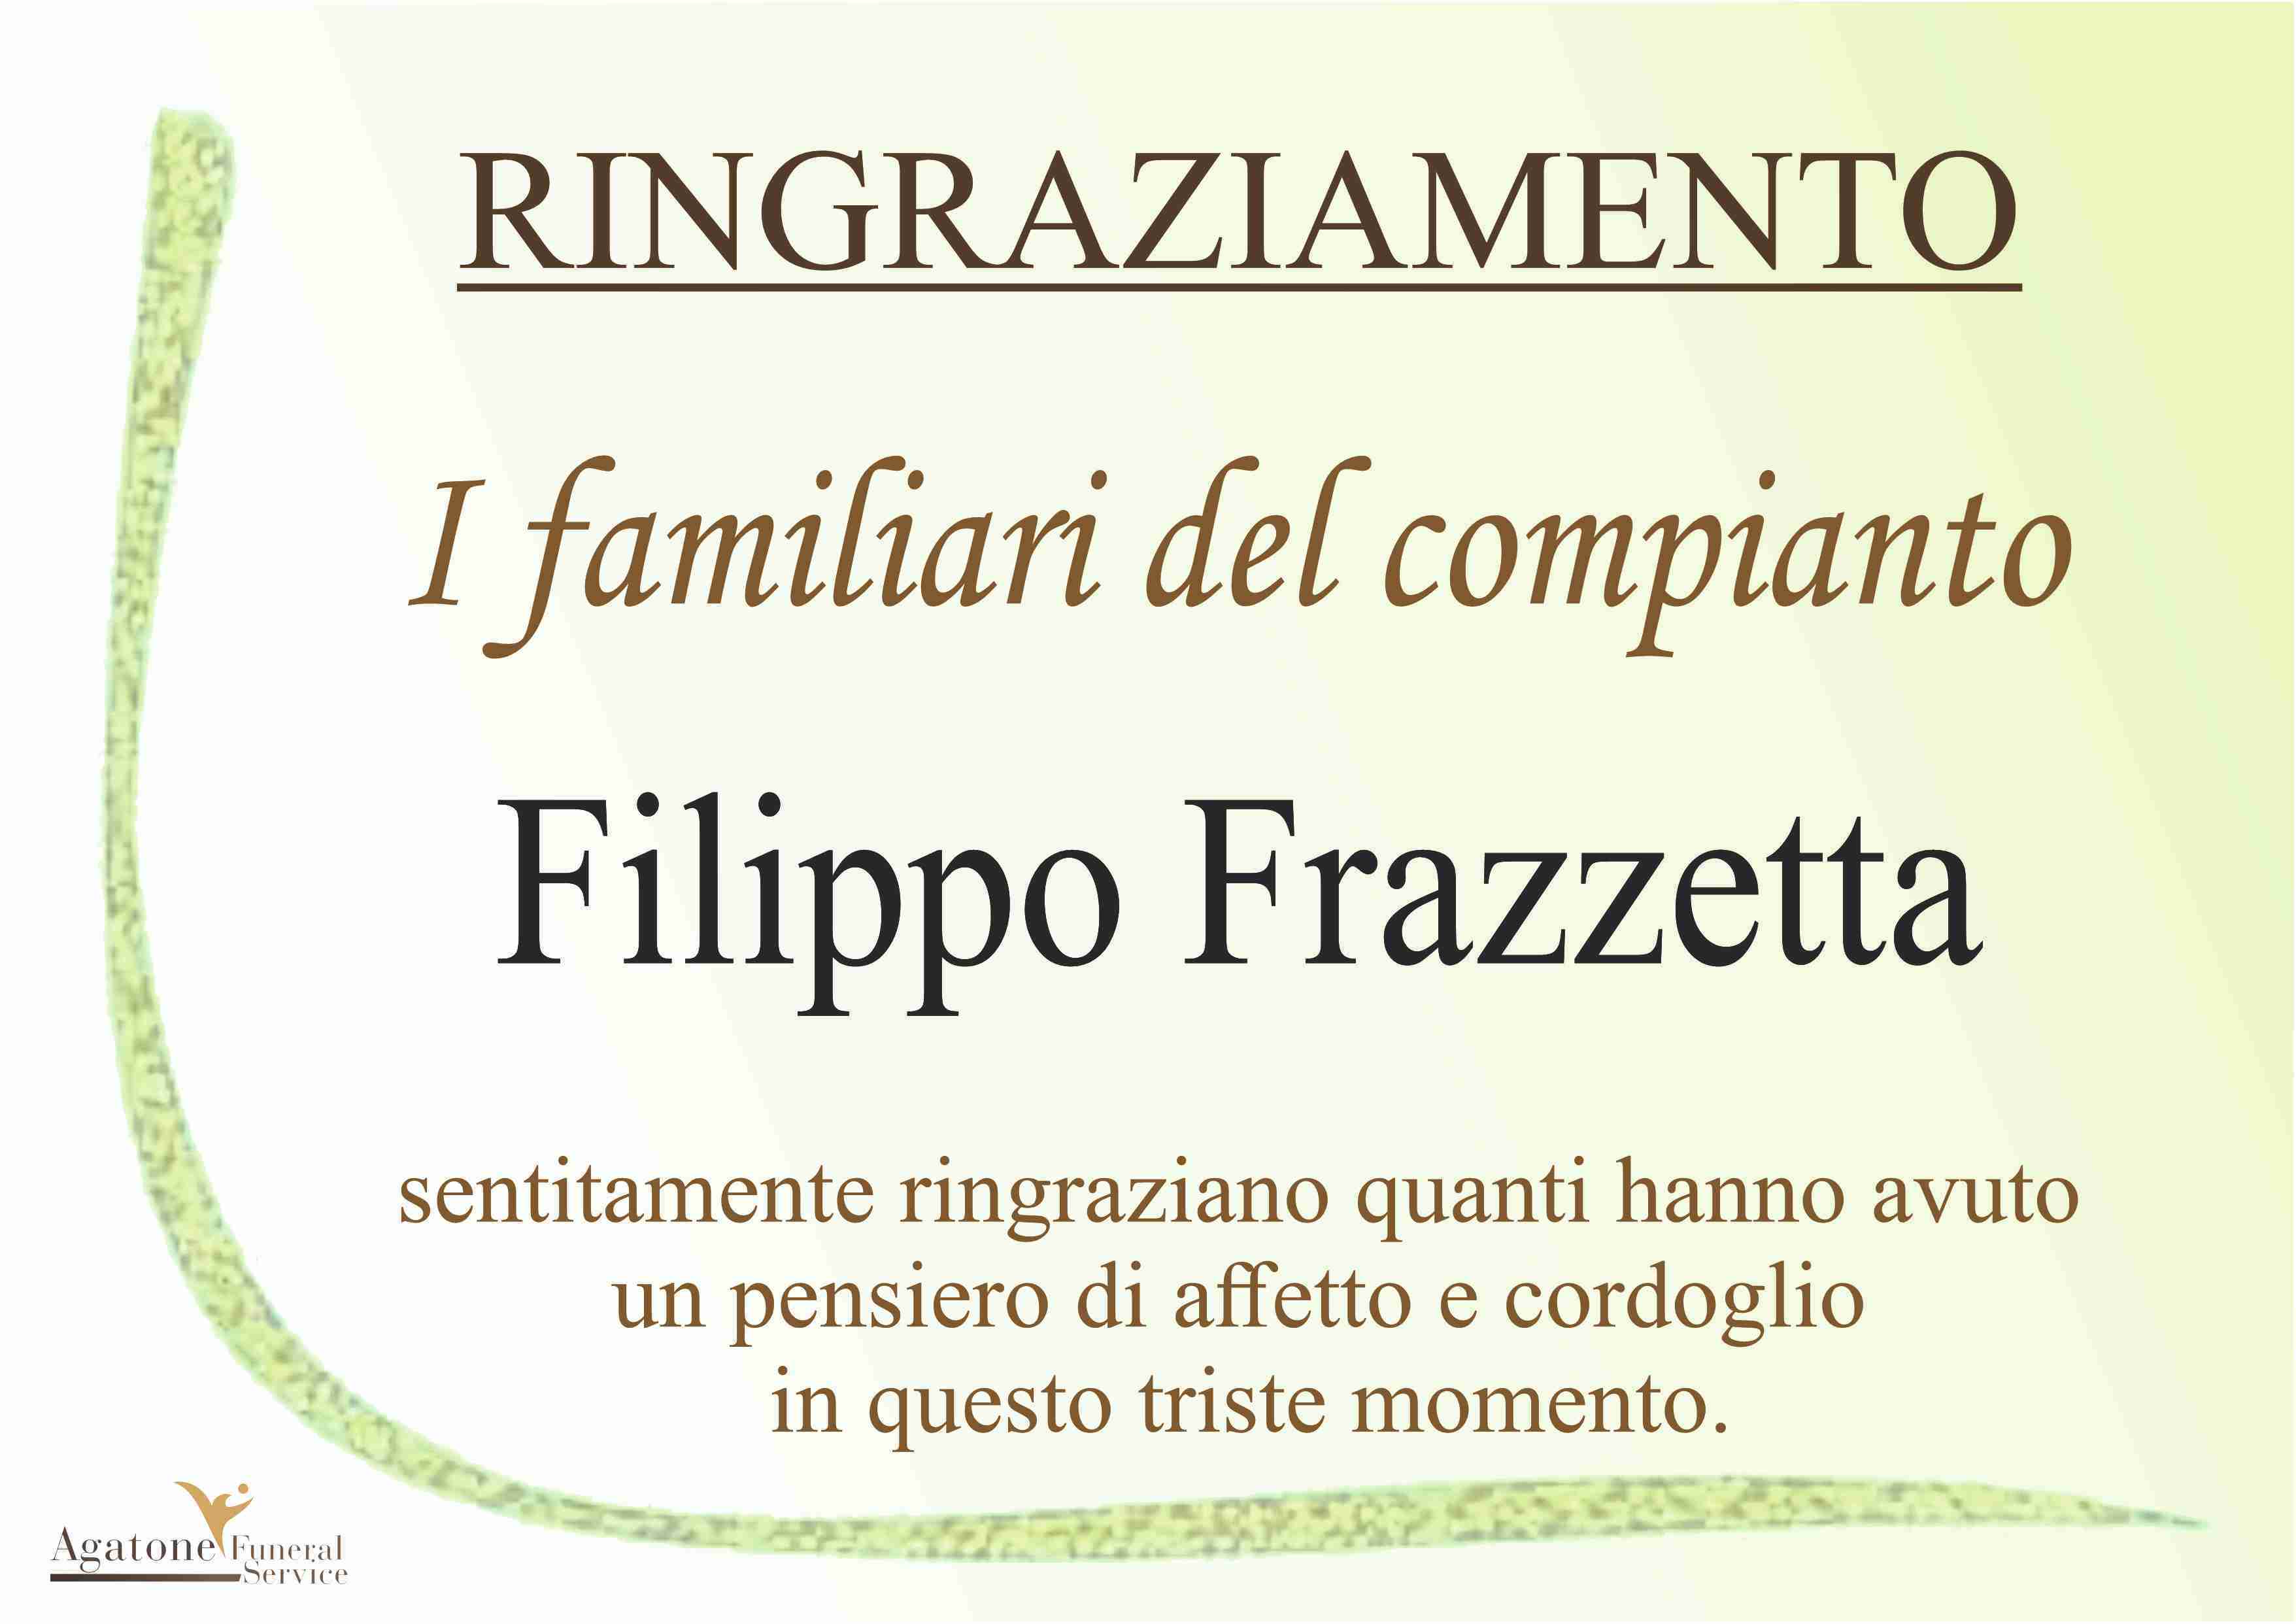 Filippo Frazzetta